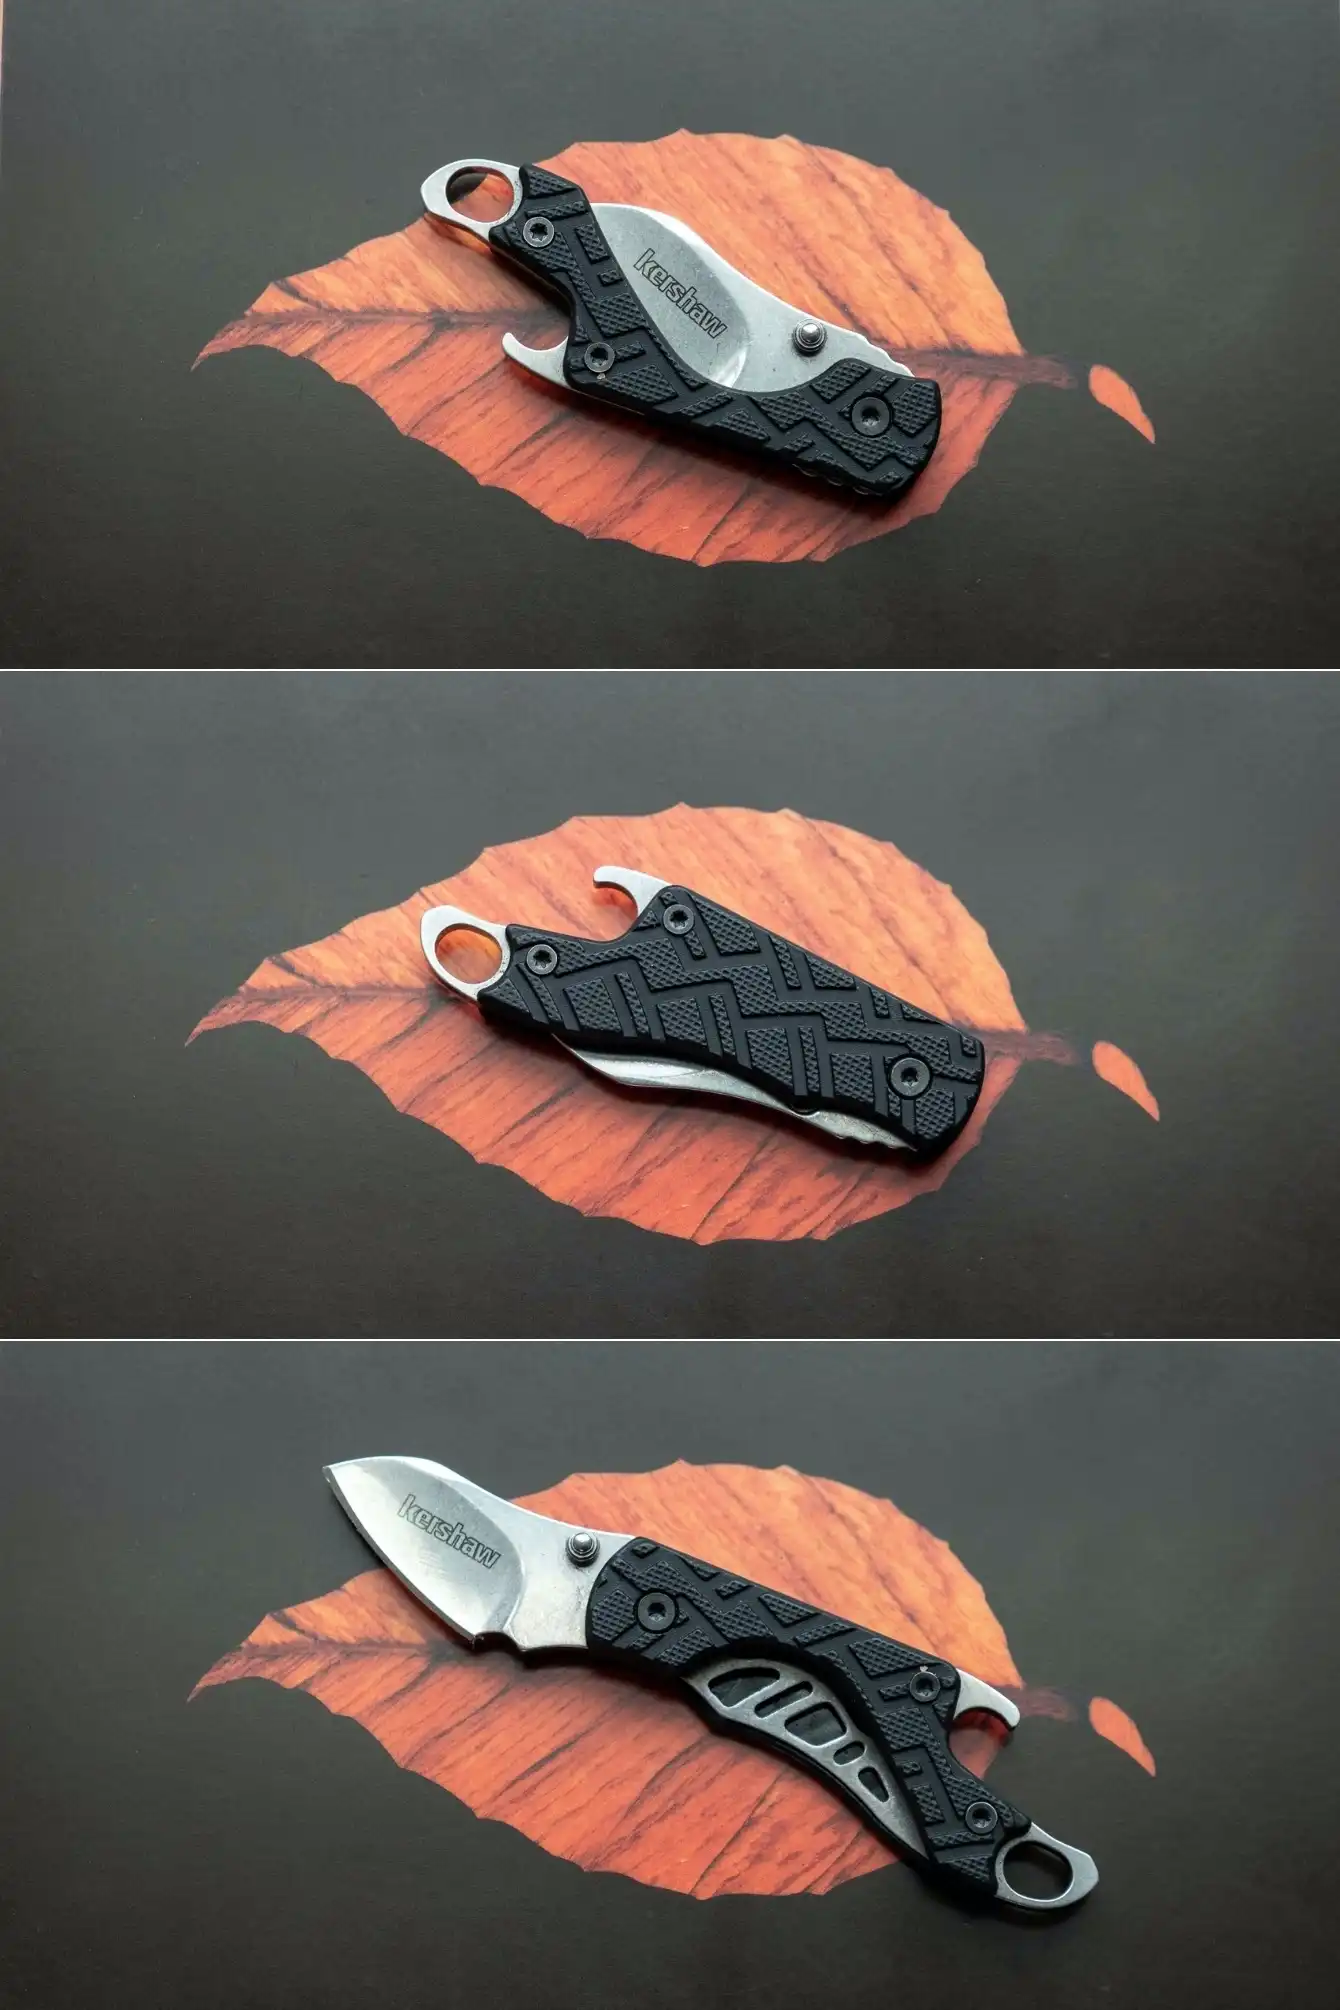 Kershaw Cinder Pocket Knife